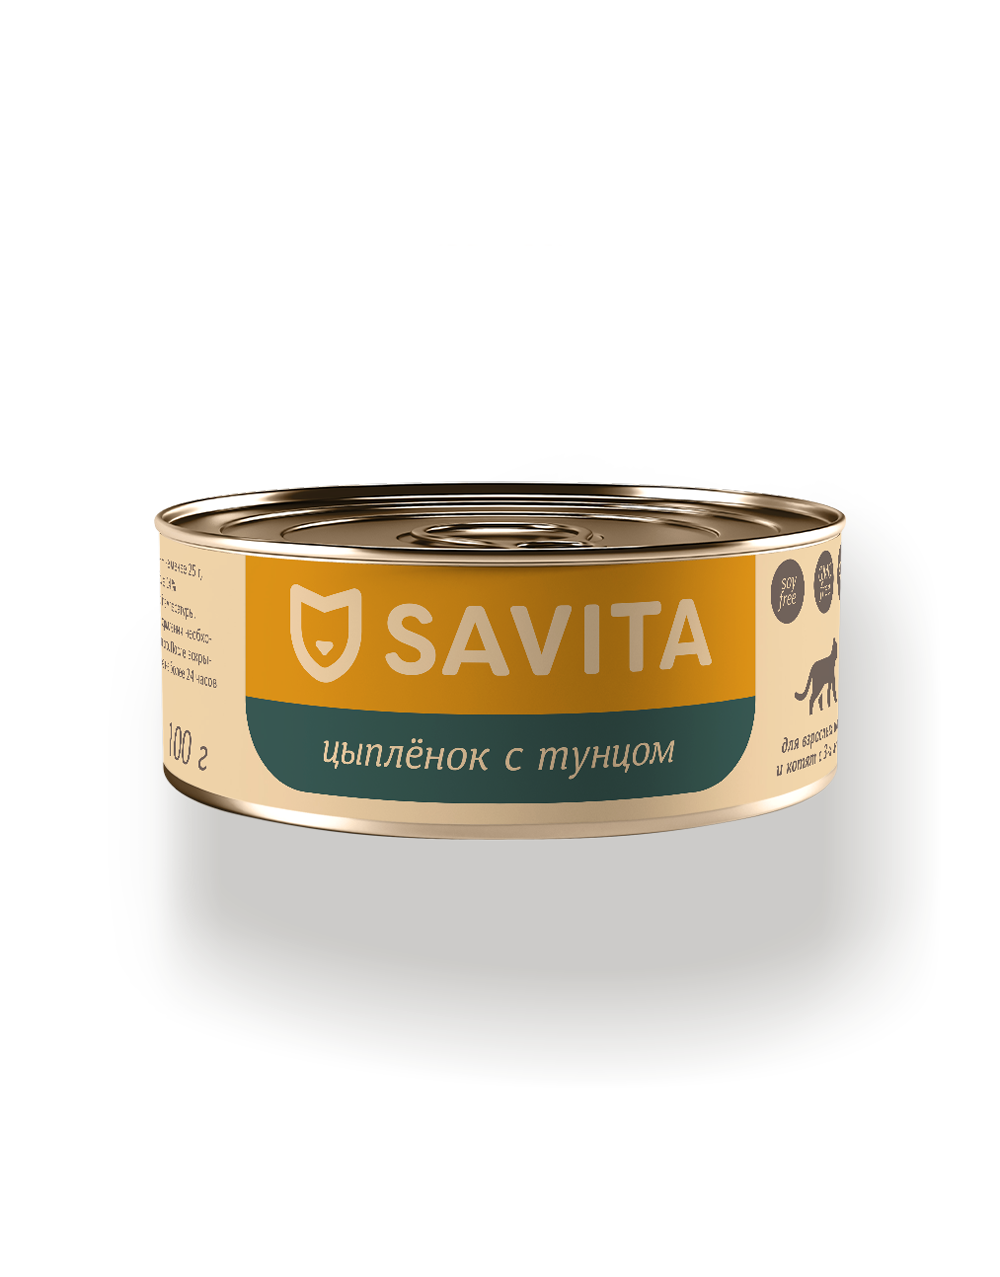 Savita 100 г - консервы для кошек и котят с цыплёнком и тунцом